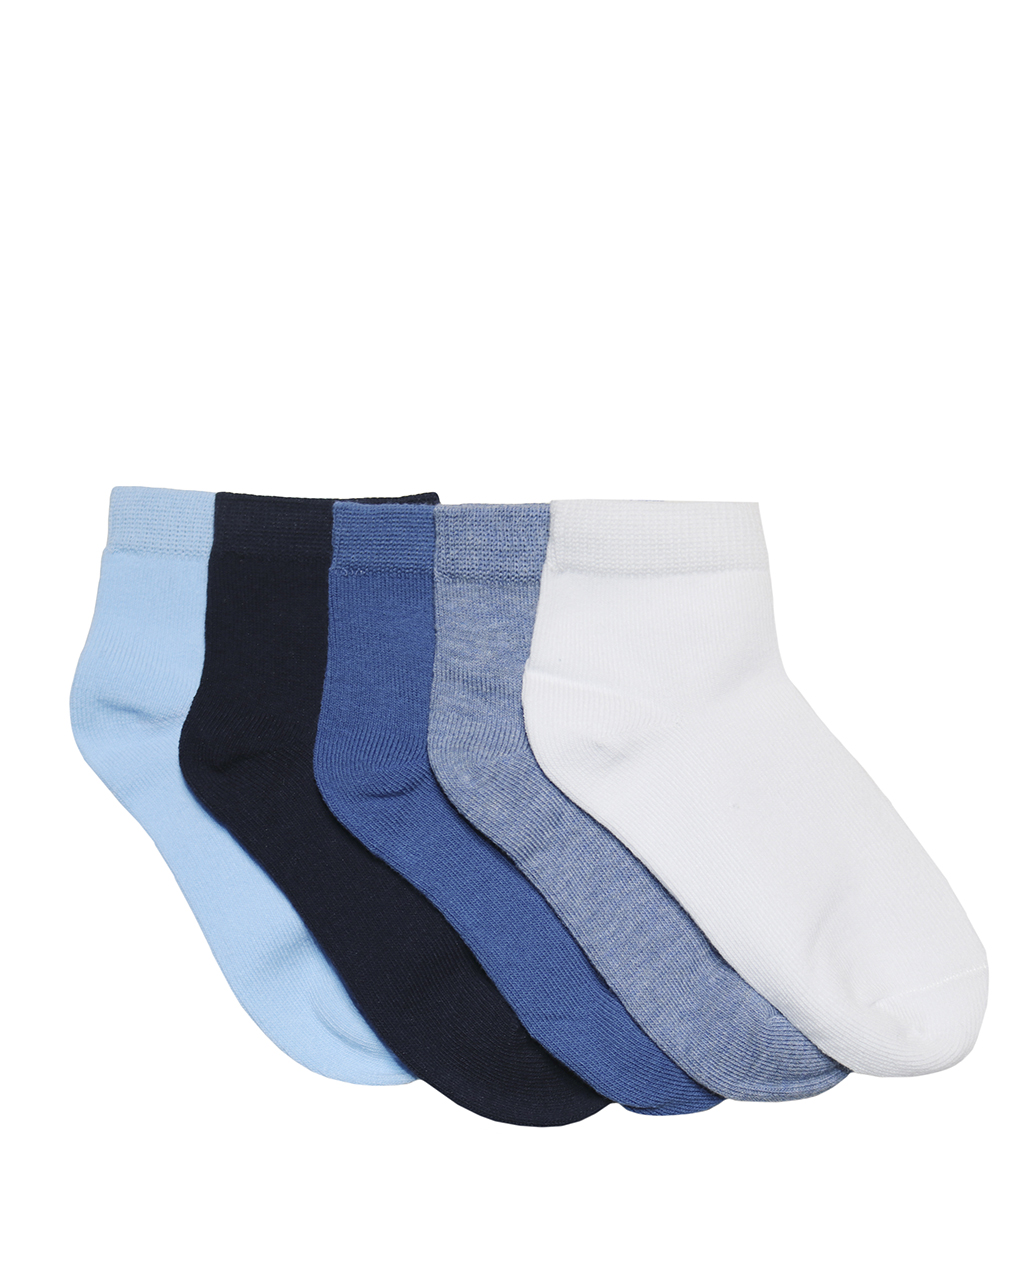 παιδικές κάλτσες κοντές χρωματιστές πακέτο x5 τμχ για αγόρι - Prénatal